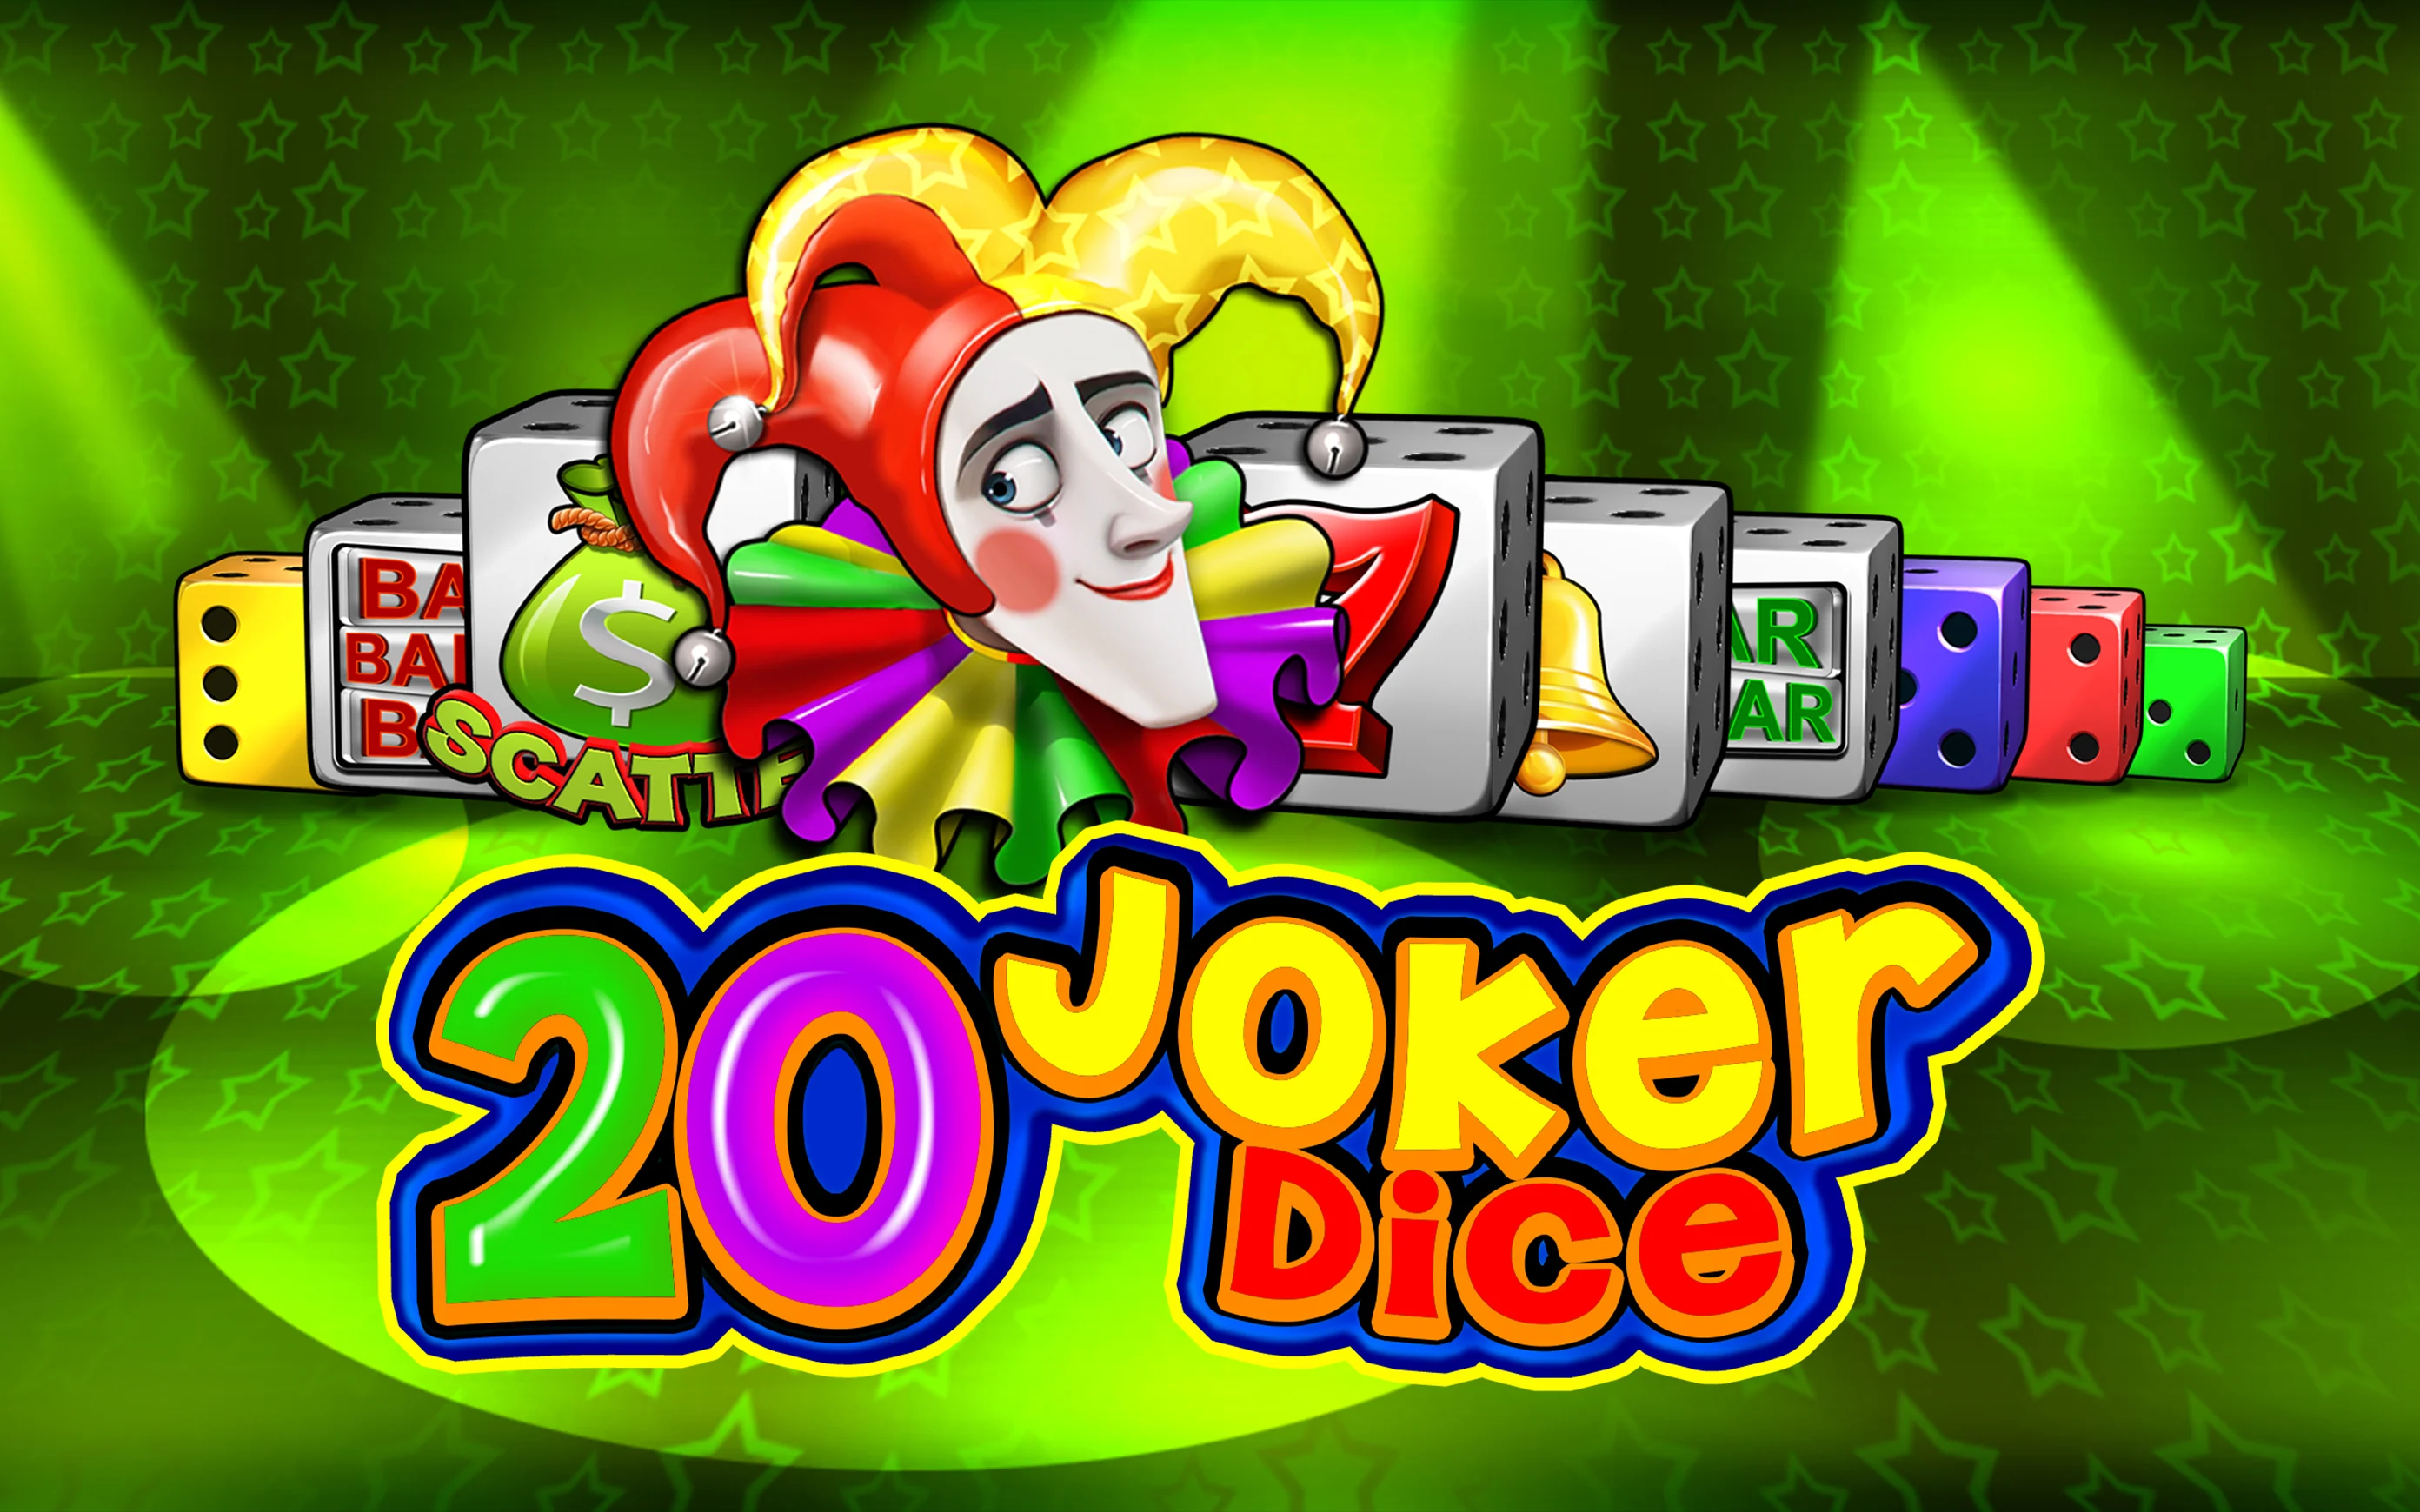 Play 20 Joker Dice on Starcasino.be online casino